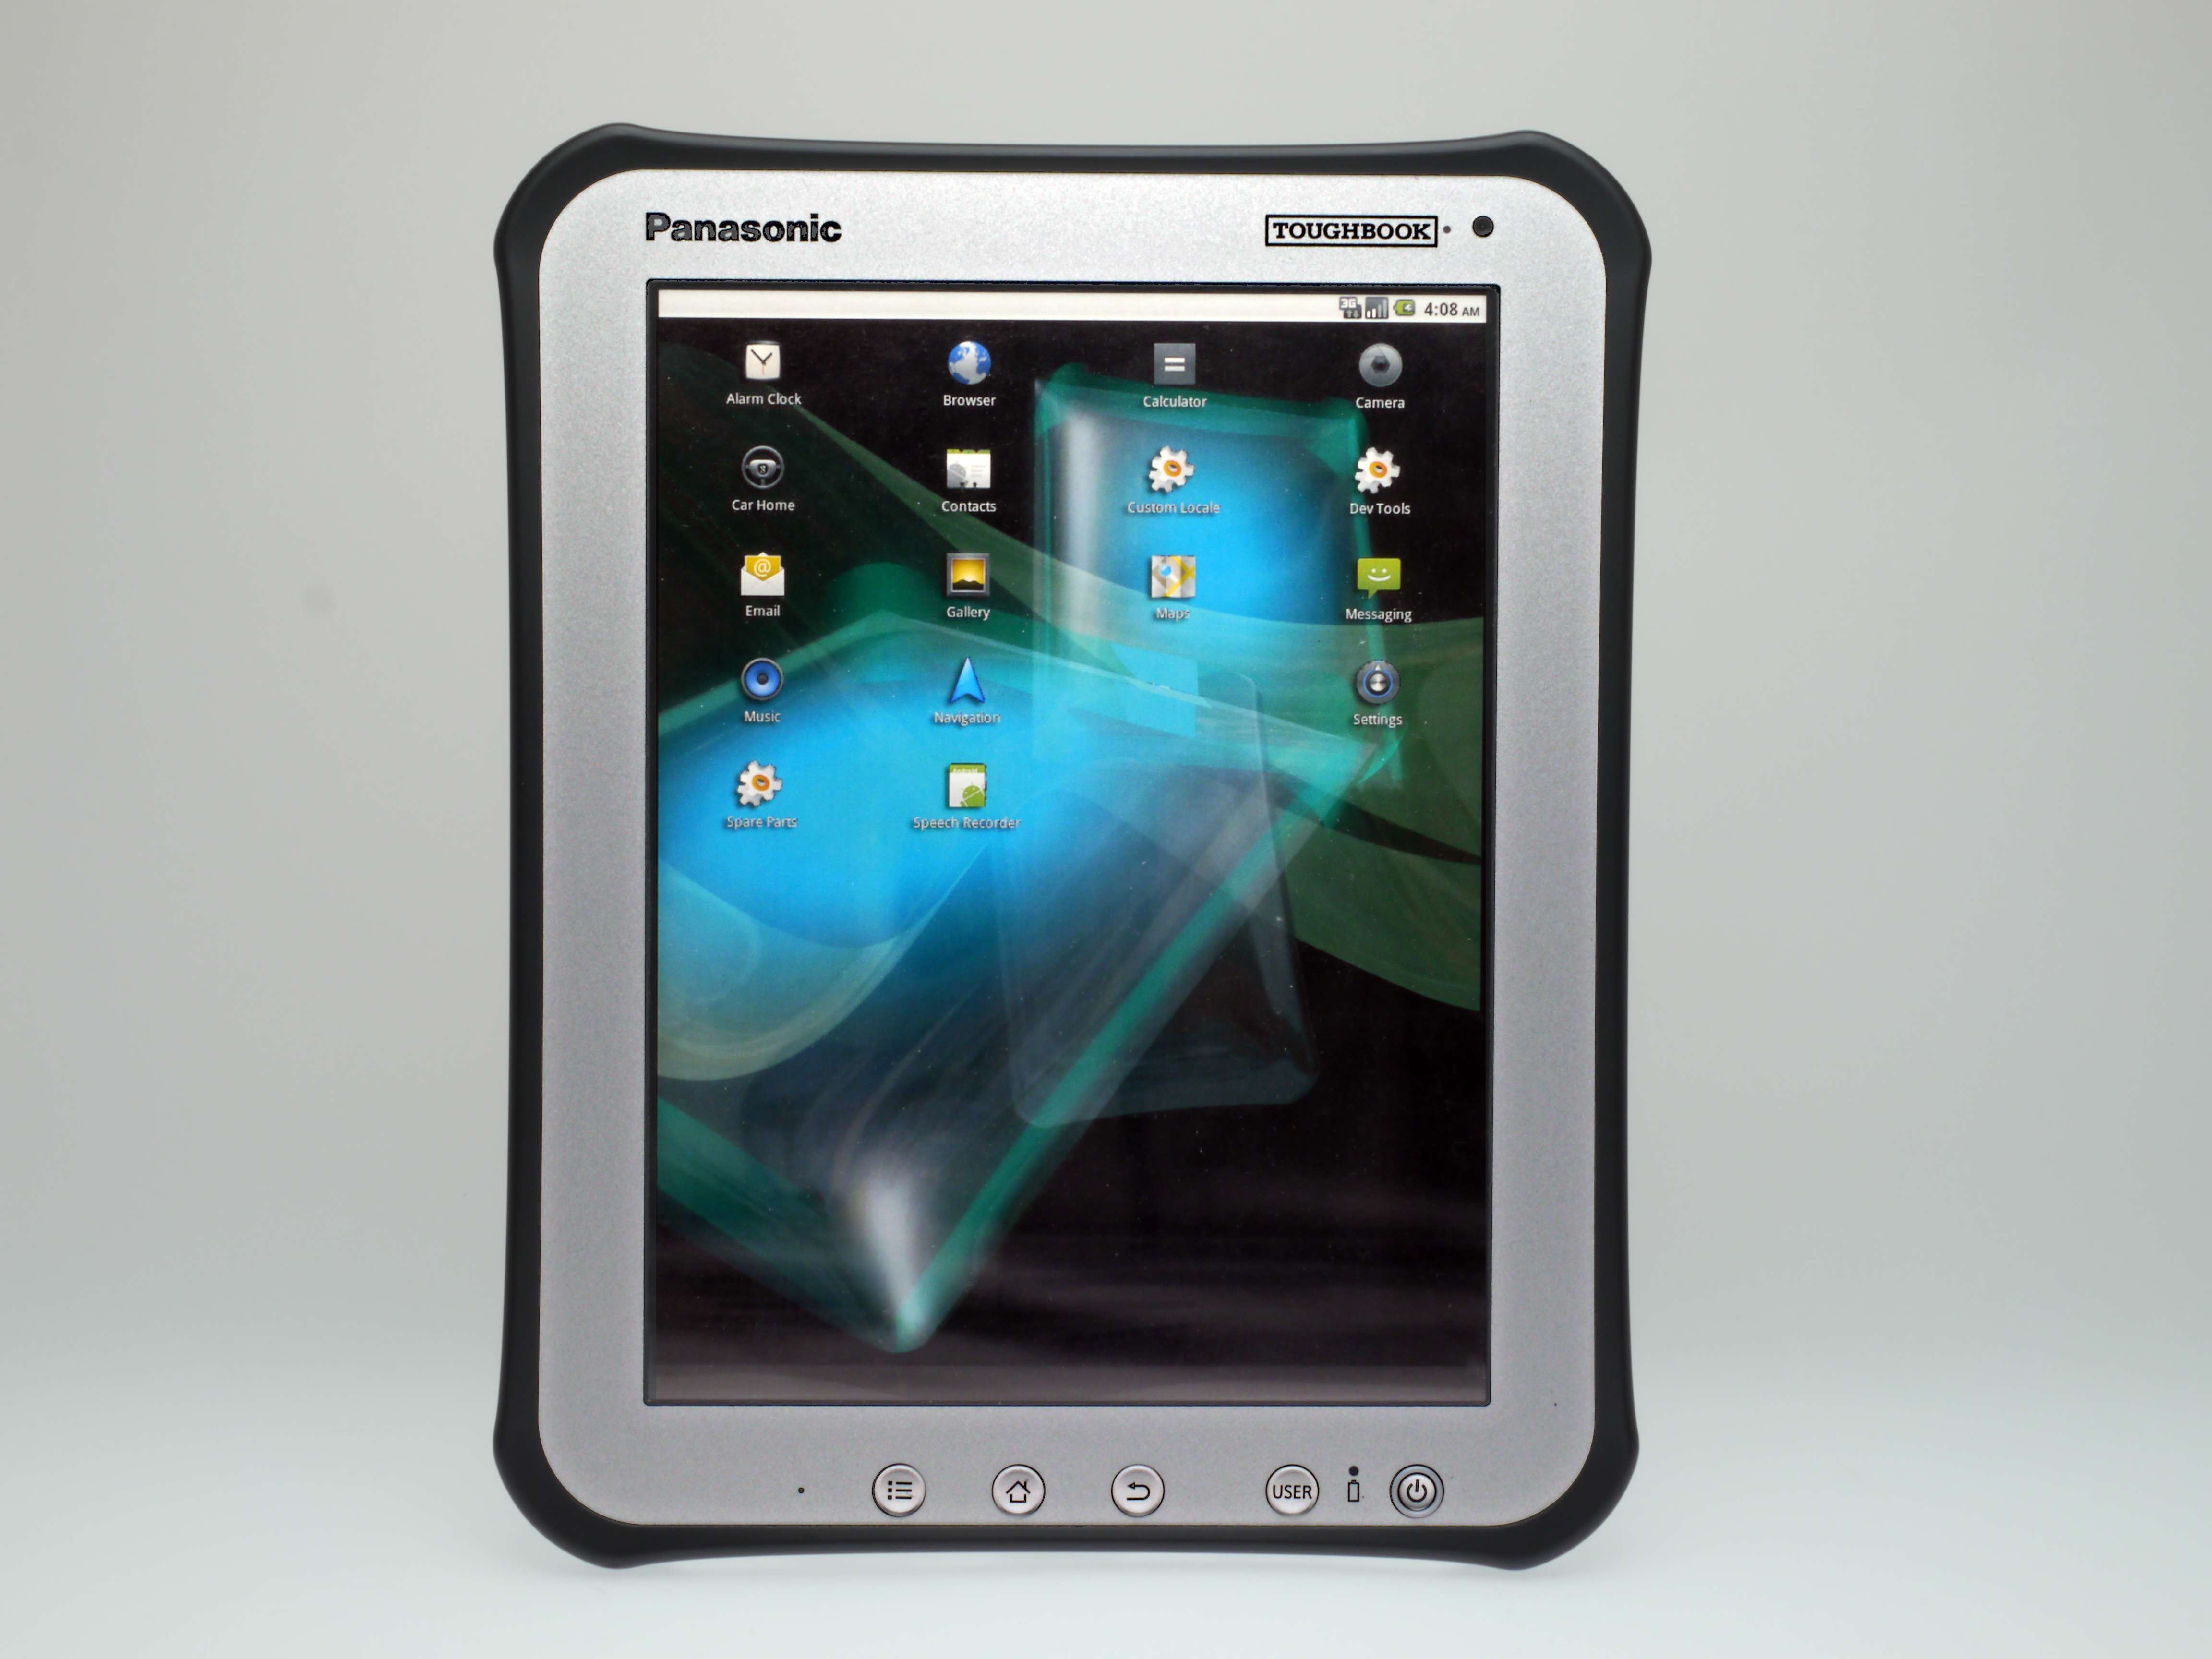 Китайская версия планшета. Panasonic Toughbook планшет. Панасоник Тан ПАГ планшет. Tablet PC планшет 2000. Китайский планшет.